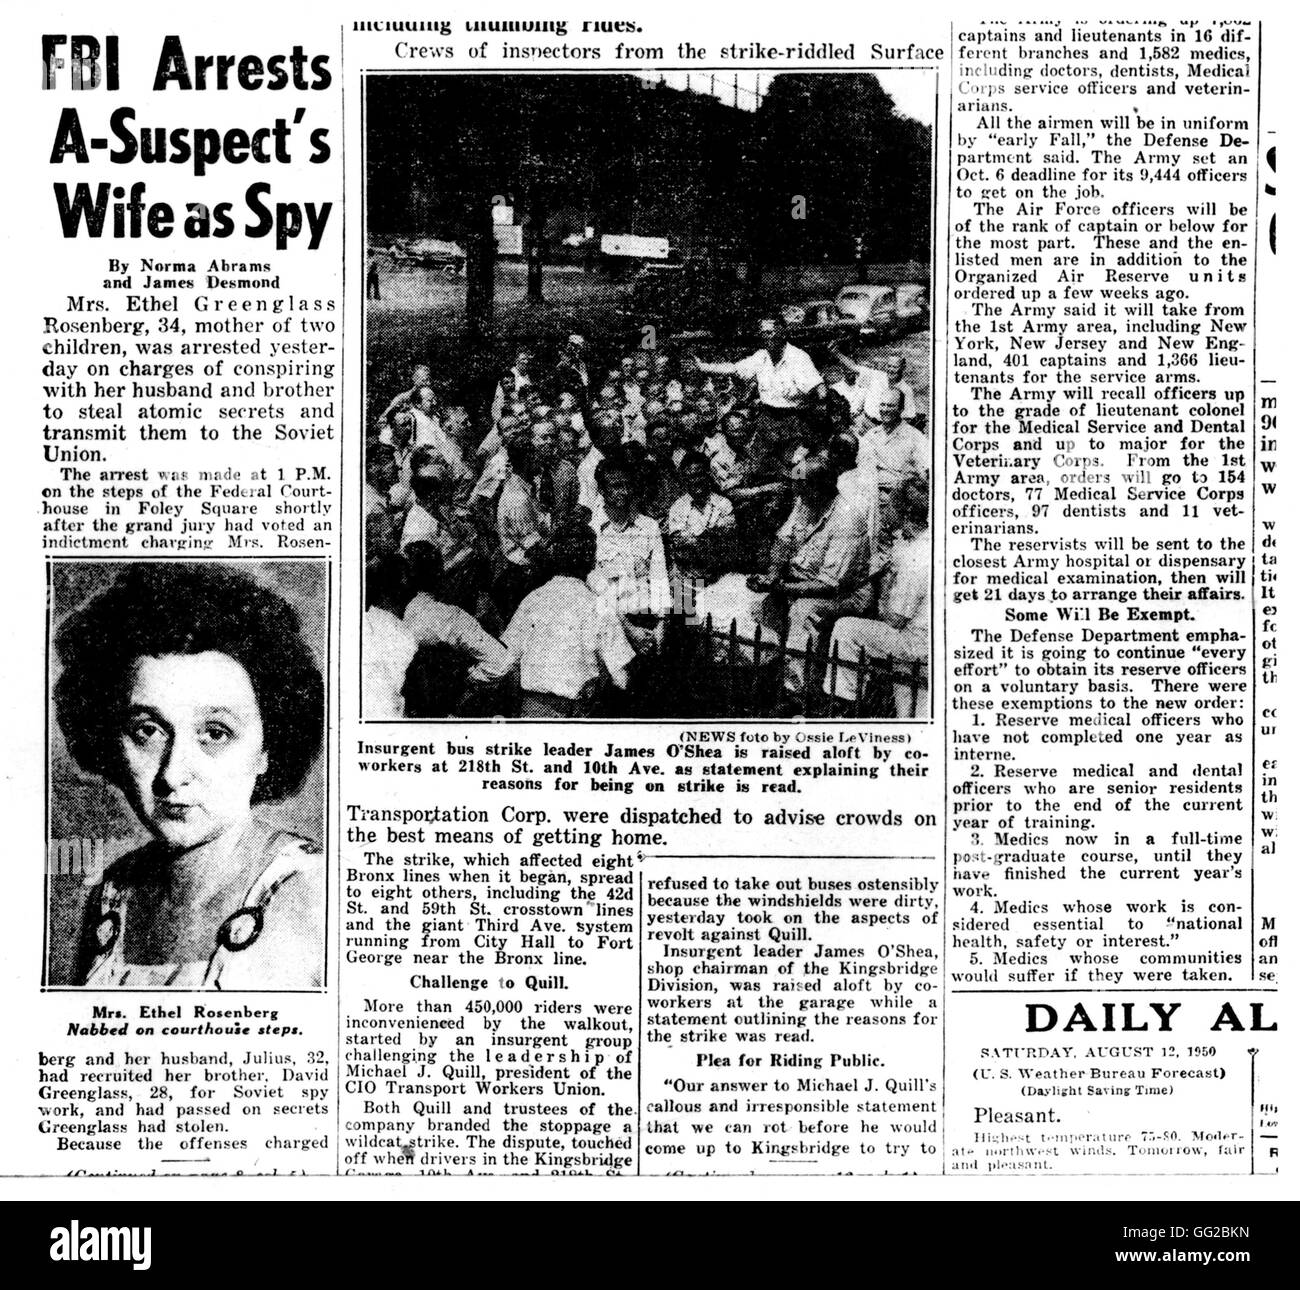 Detención de Ethel Rosenberg, el 11 de agosto de 1950, por el F.B.I., relacionados por el New York 'Daily News' Estados Unidos 1950 Foto de stock